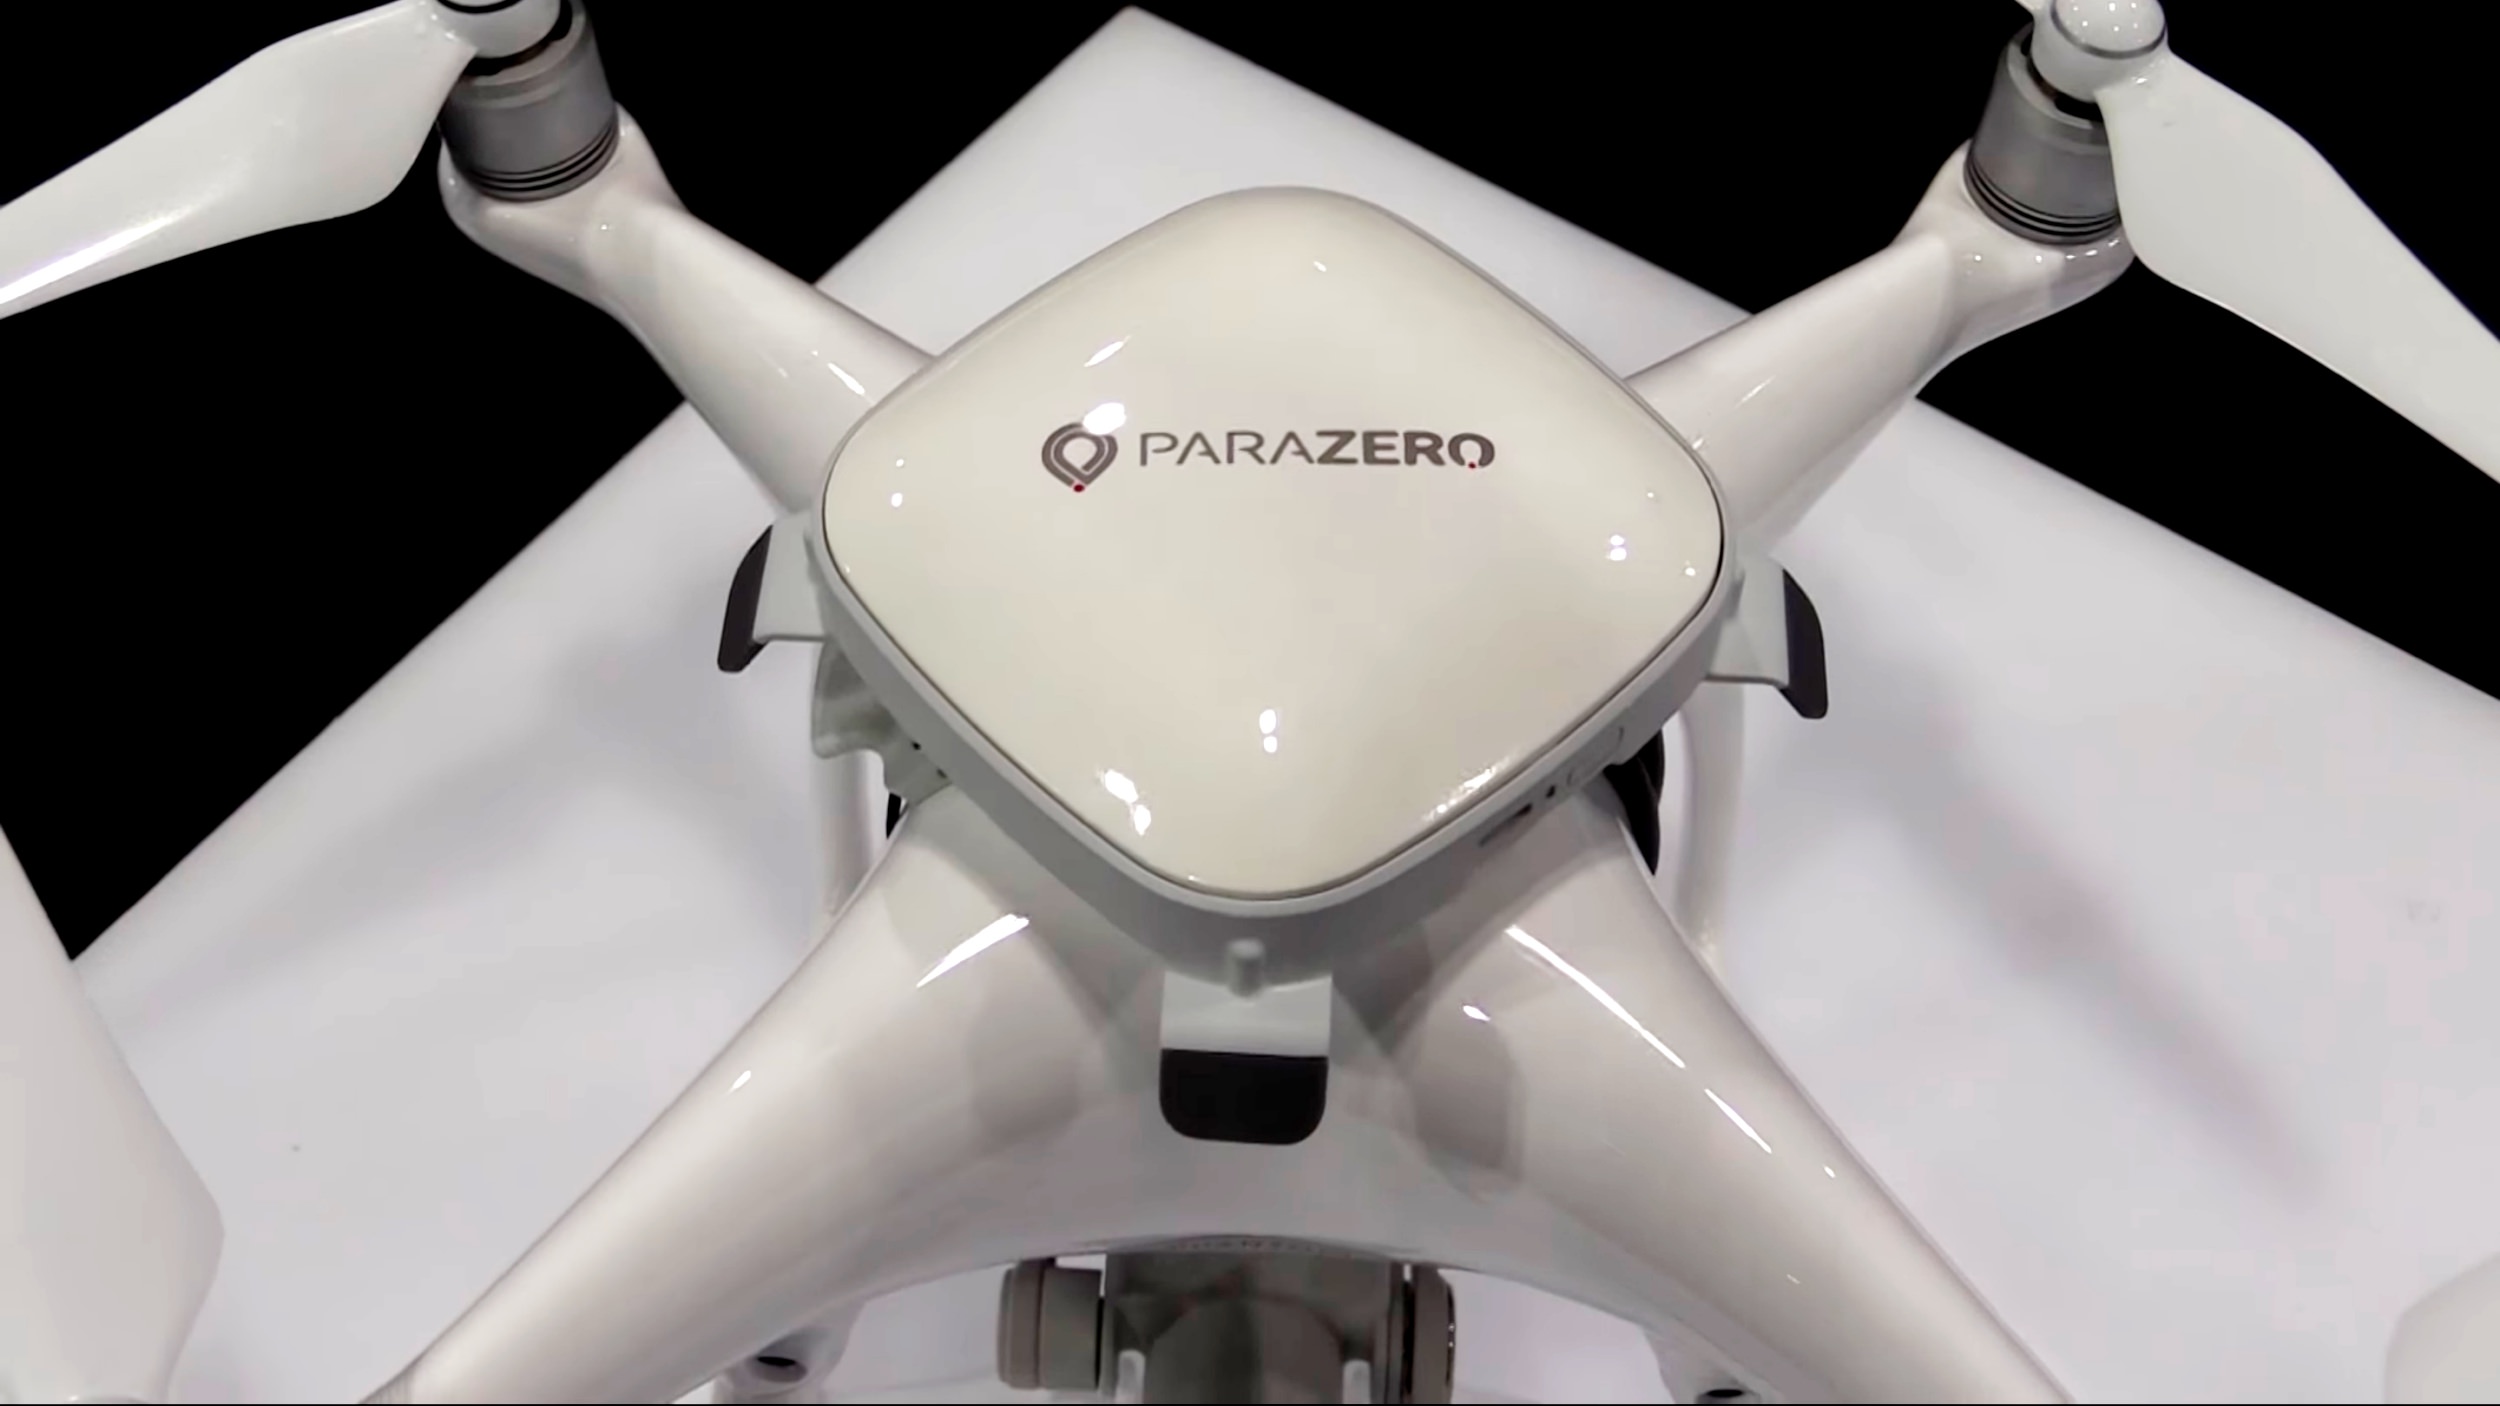 dji Phantom 4 Parazero Multicopter-Fallschirmsystem apropiado para